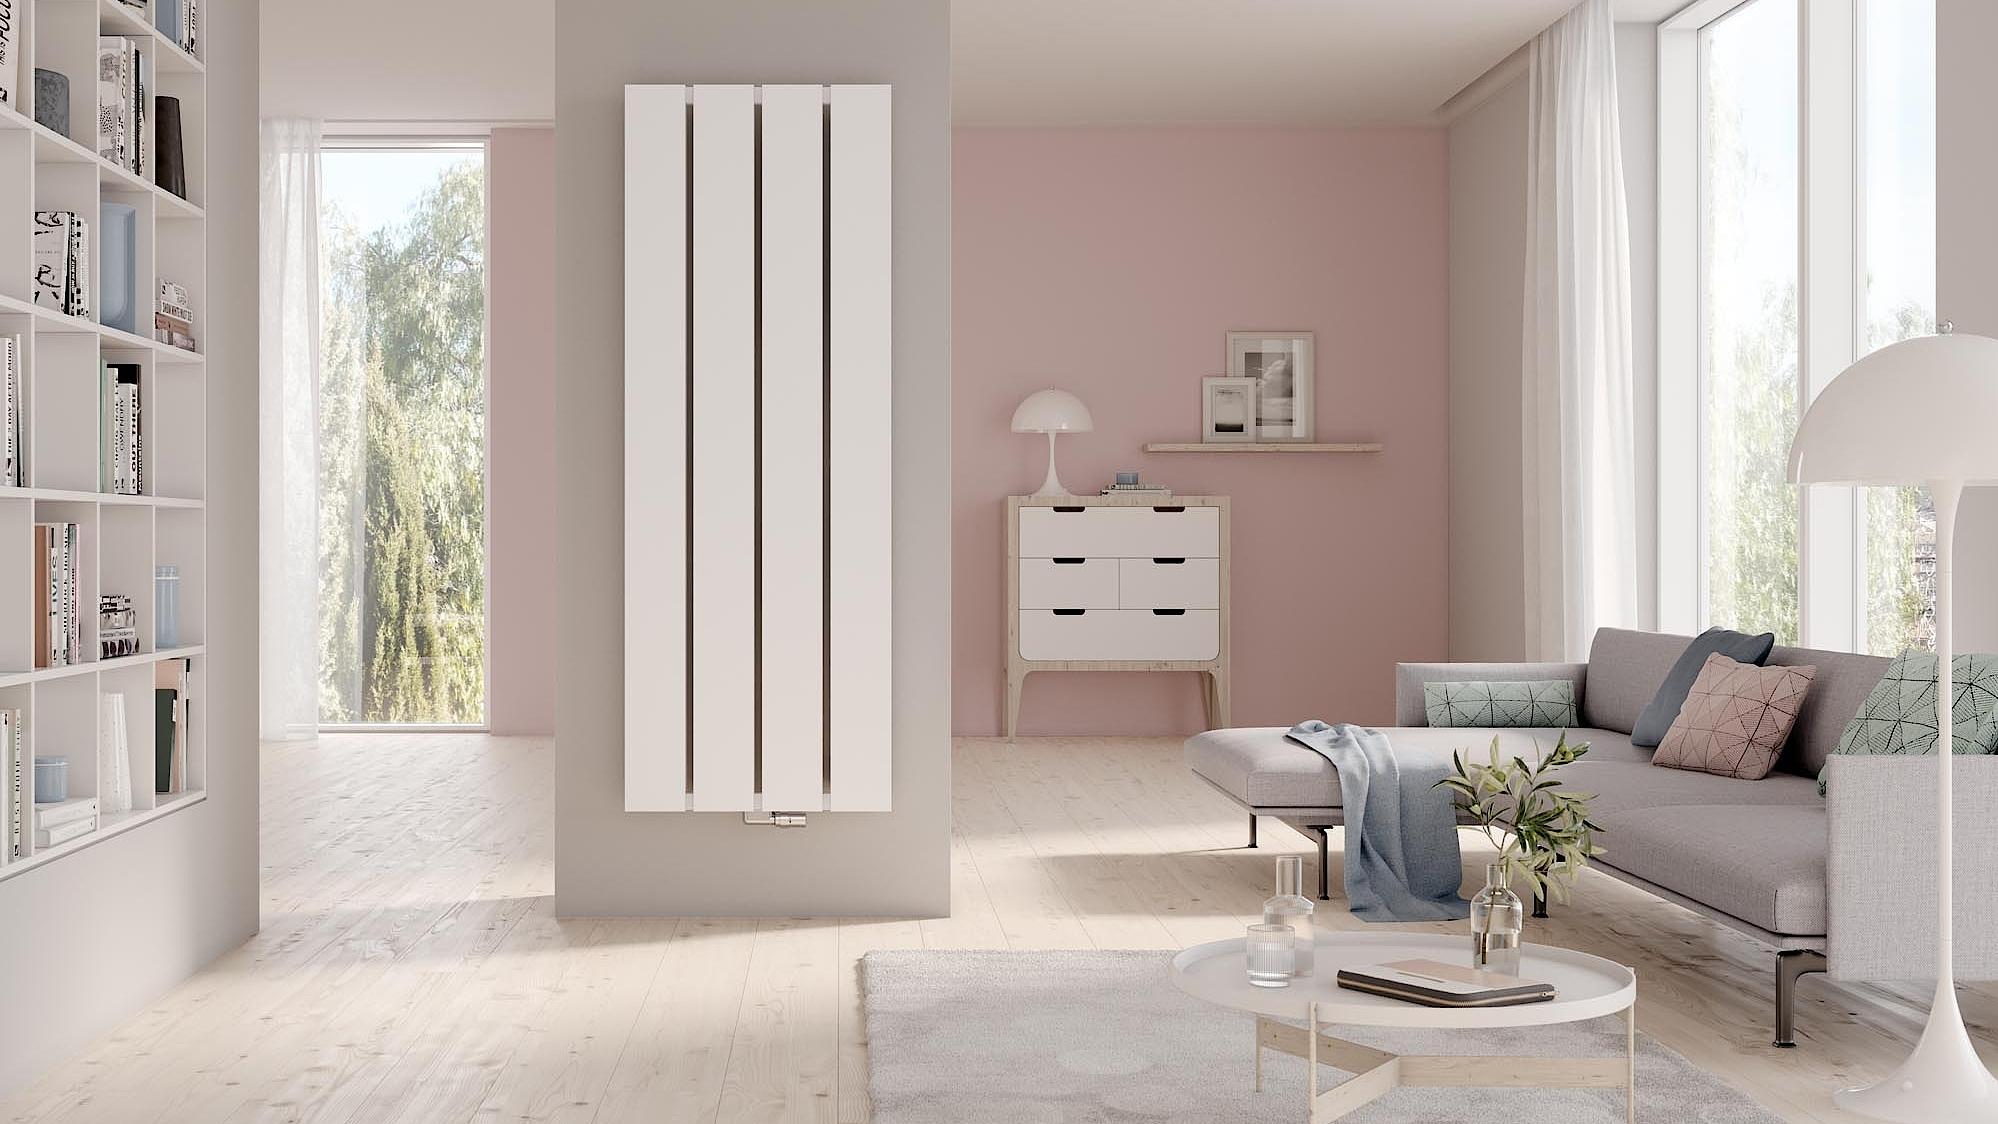 Il radiatore da bagno e di design Kermi Decor-Arte Plan colpisce per il suo design moderno e minimalista.